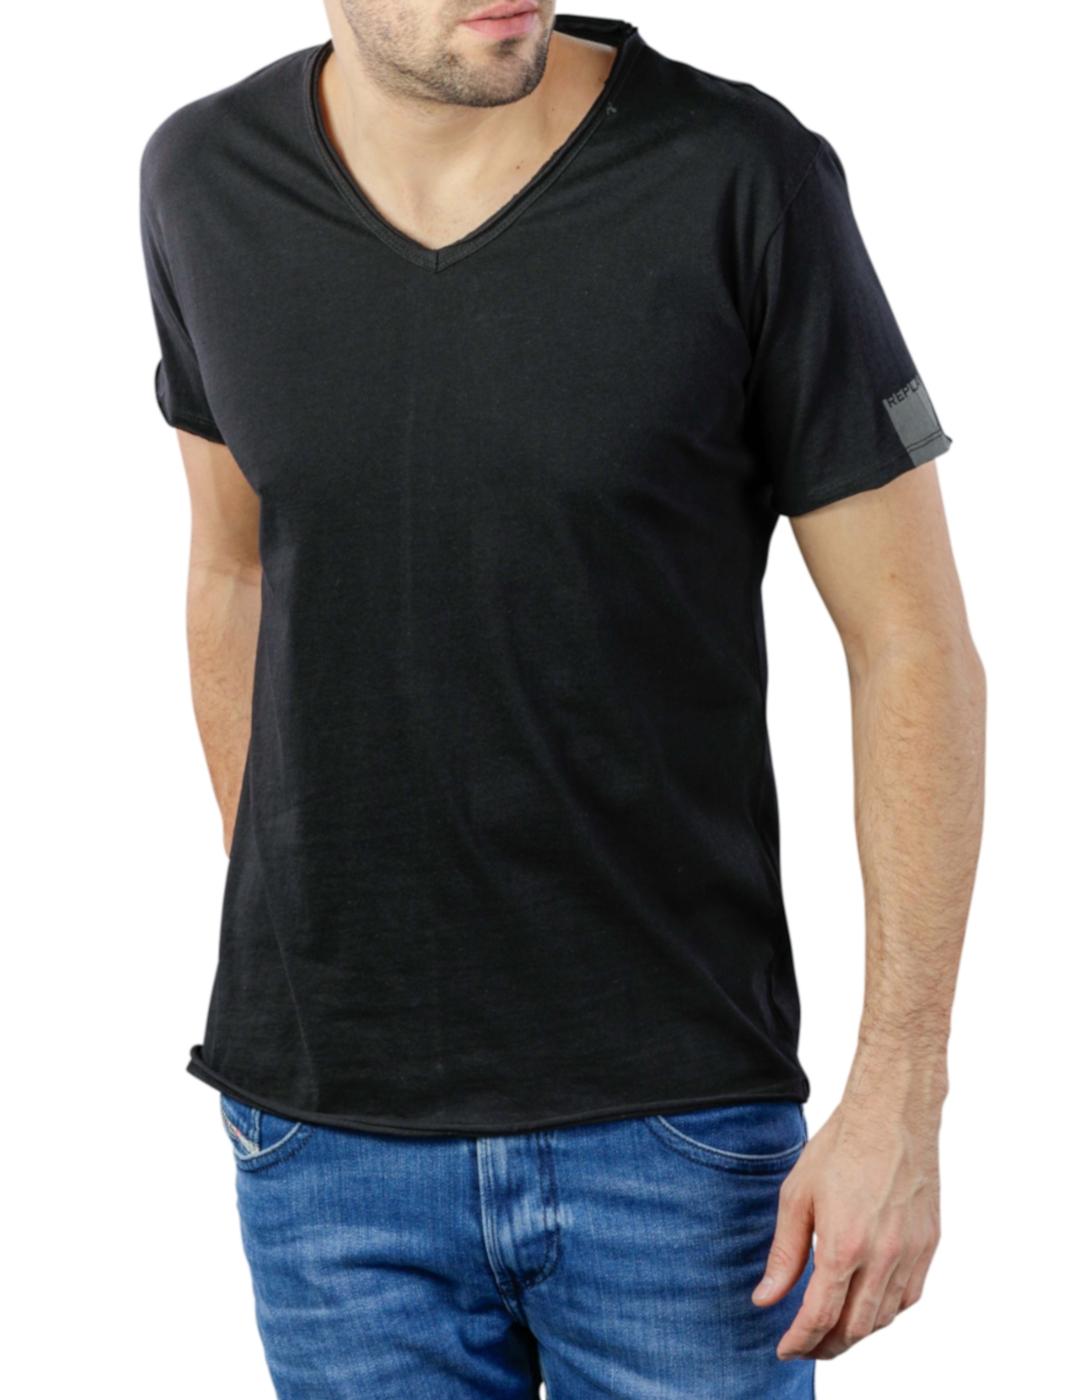 Camiseta Replay cuello en 'V' en color negro -&